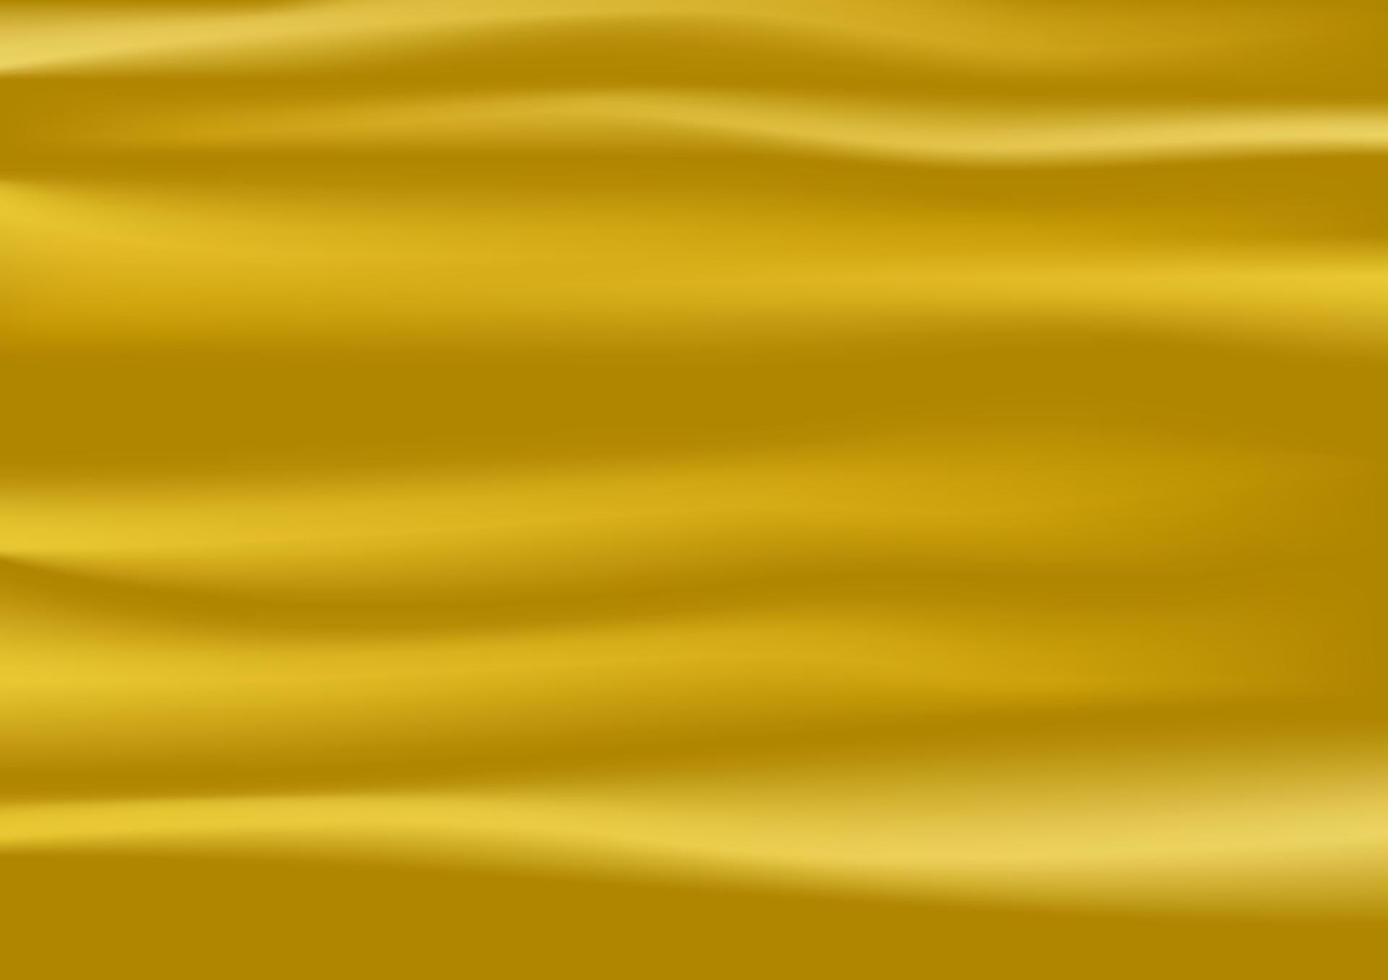 den abstrakta guldfärgtonen för texturmönster bakgrundsvektorillustration vektor